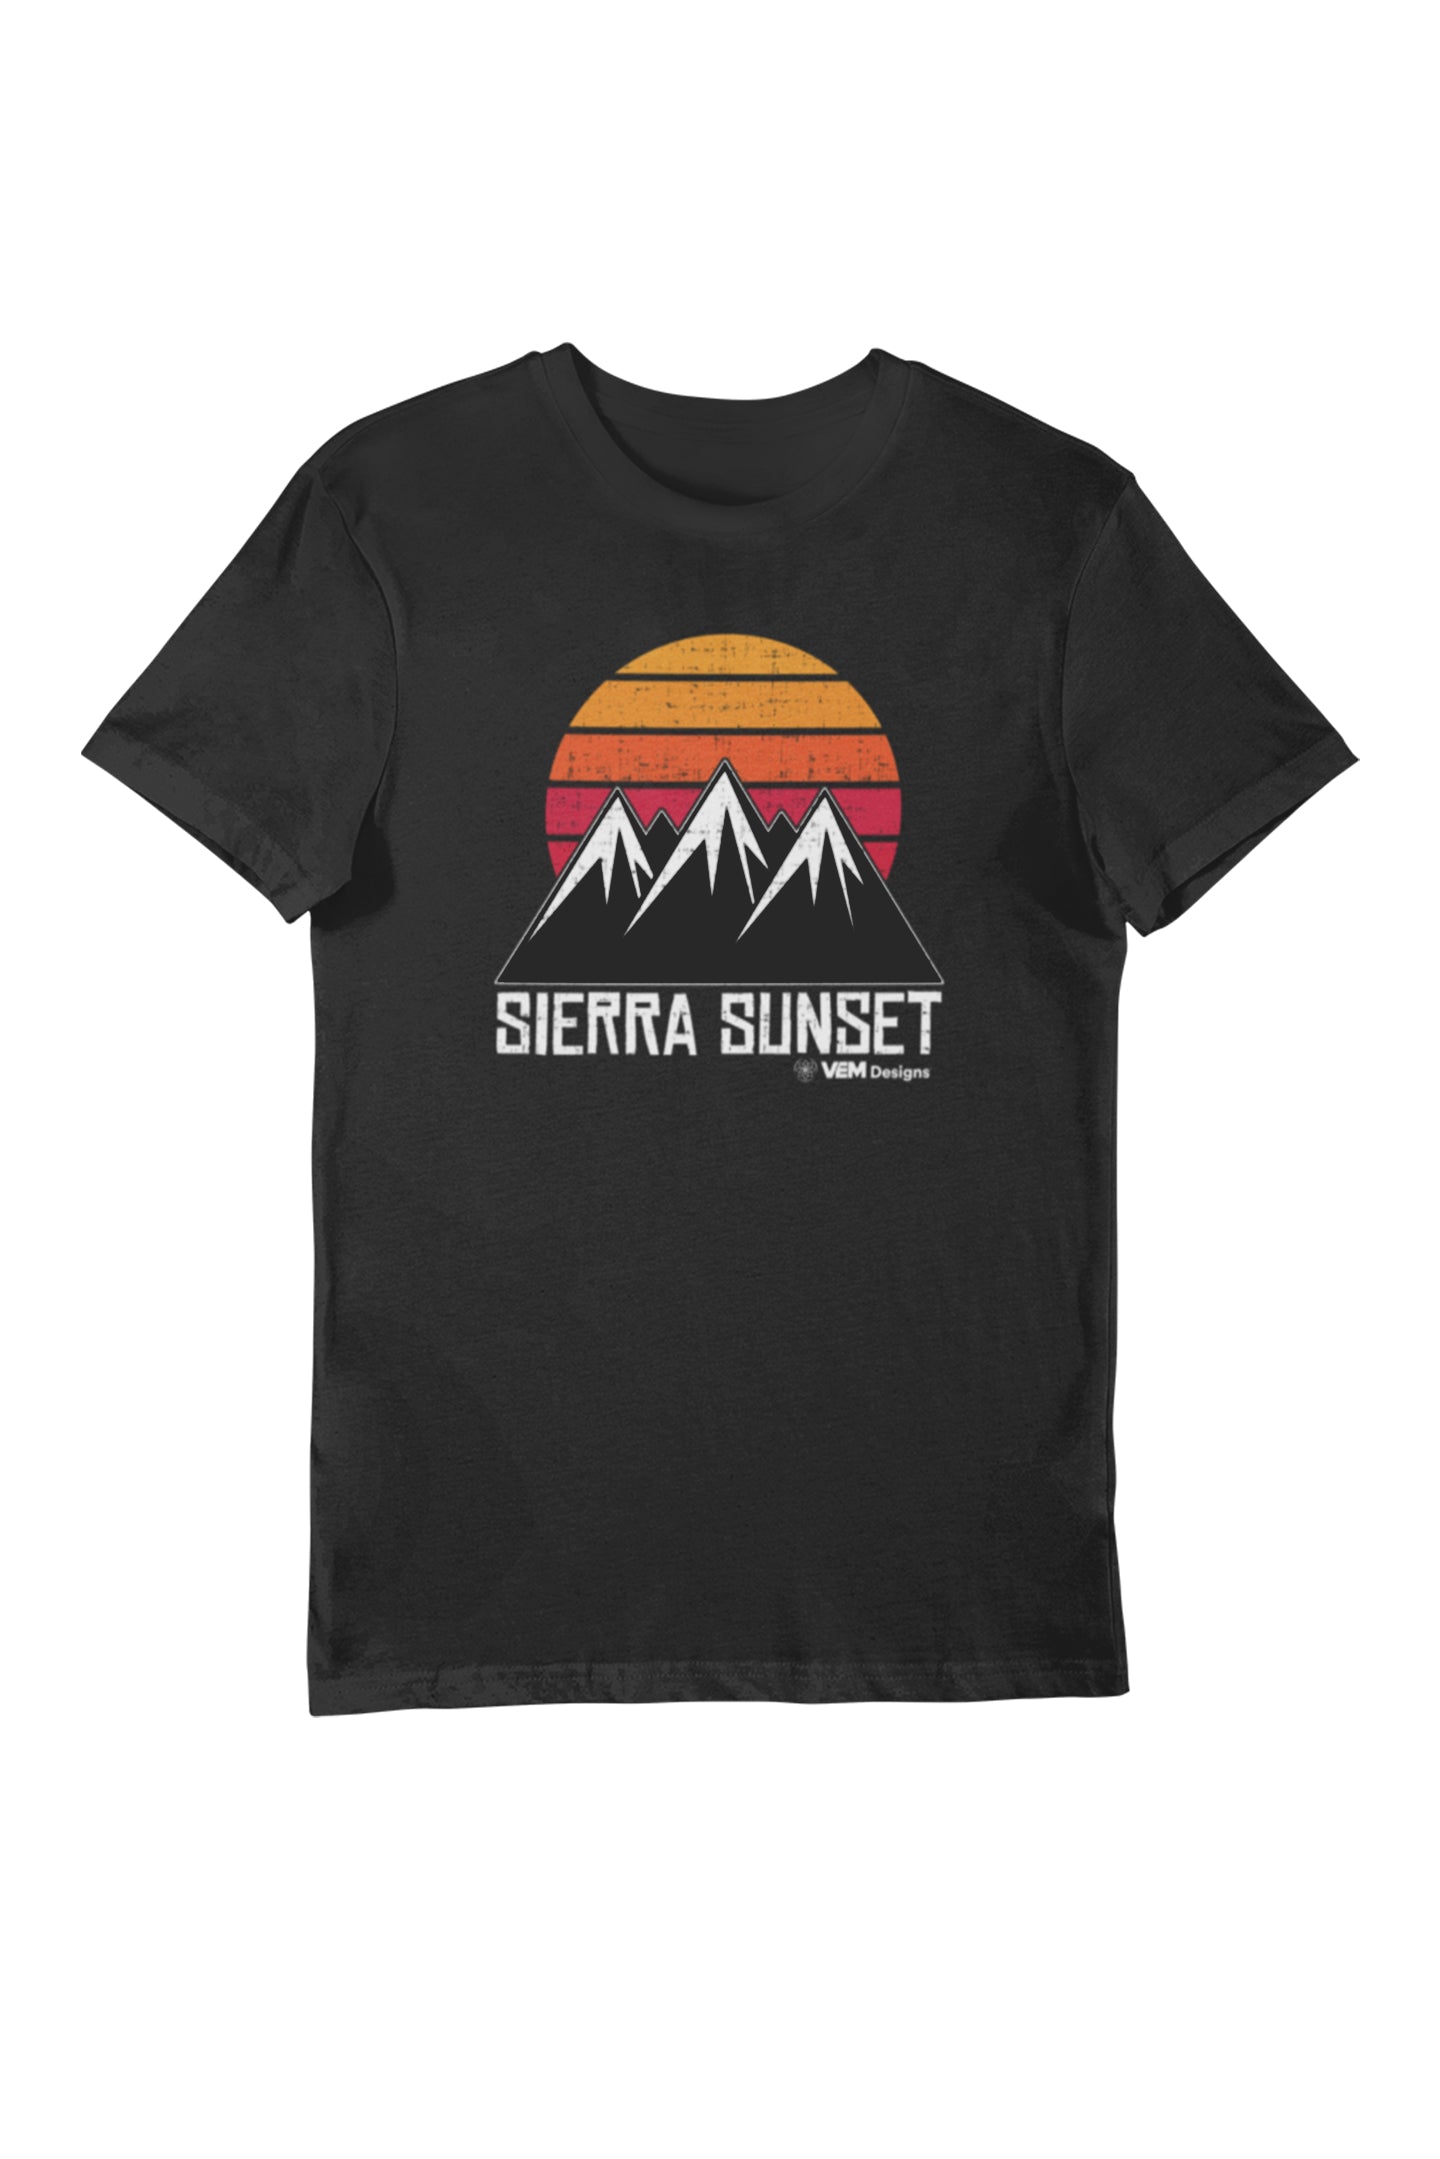 Sierra Sunset - Men's